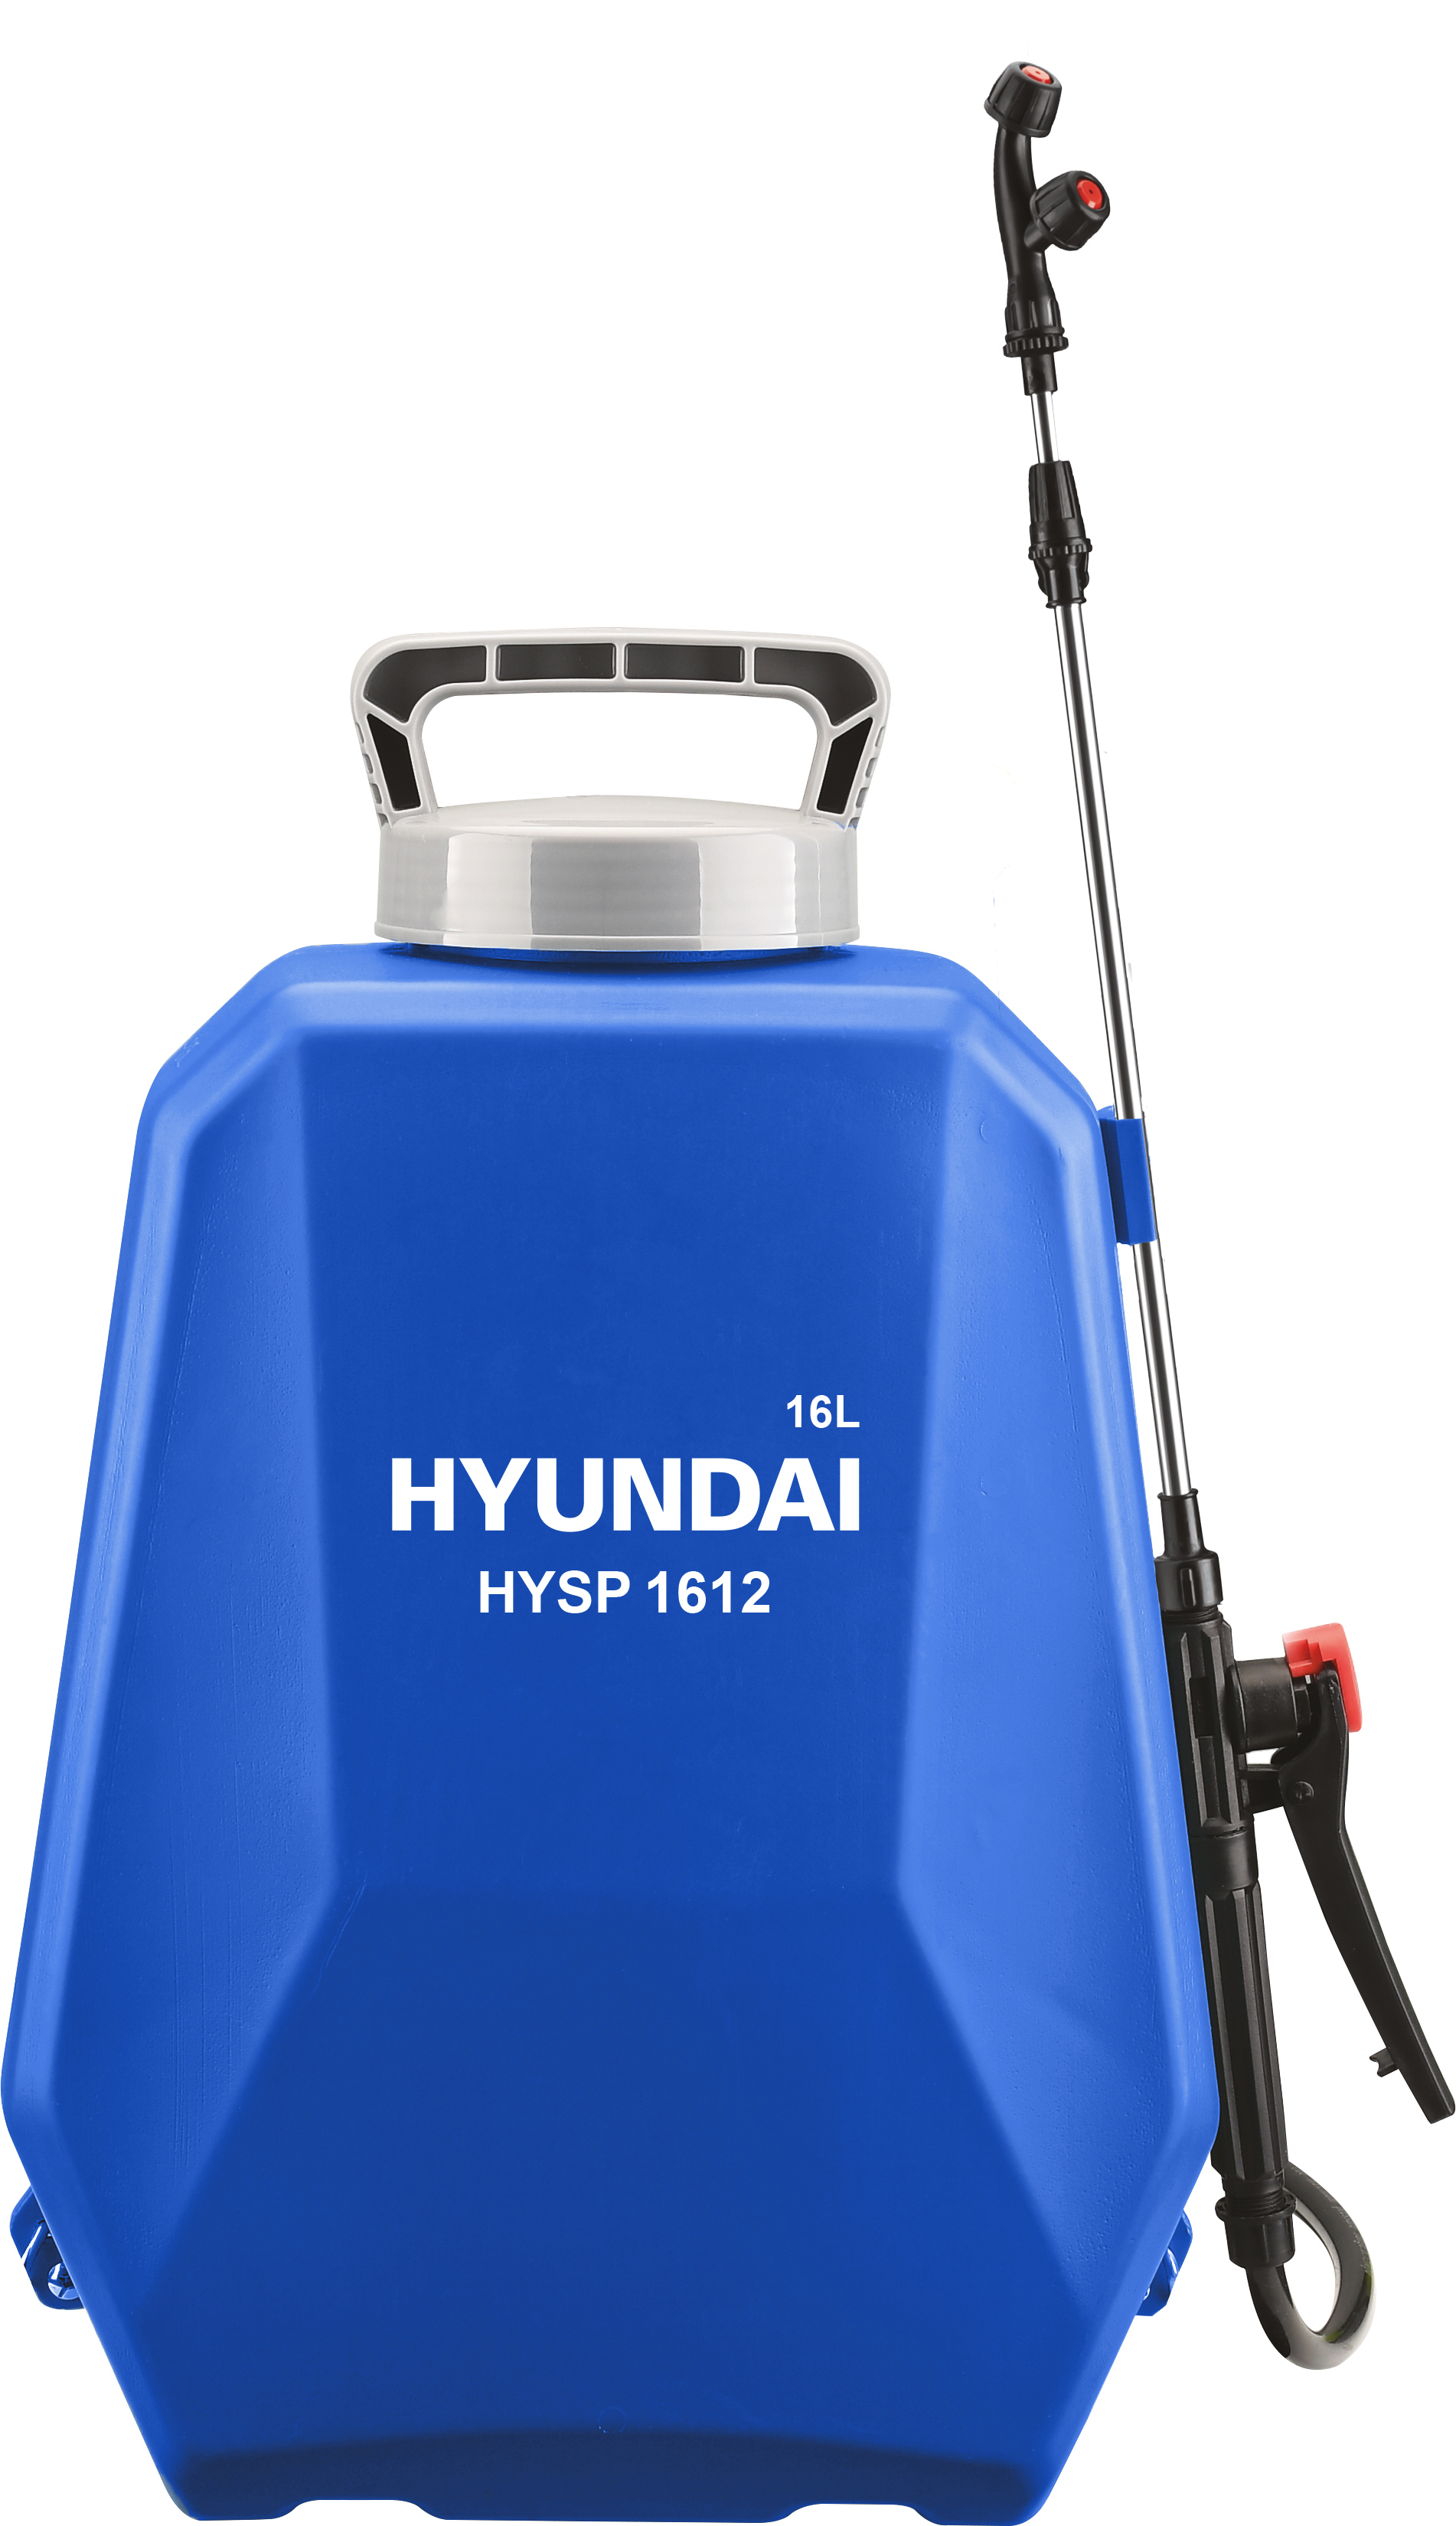 Аккумуляторный опрыскиватель Hyundai HYSP 1612 аккумуляторный опрыскиватель ryobi